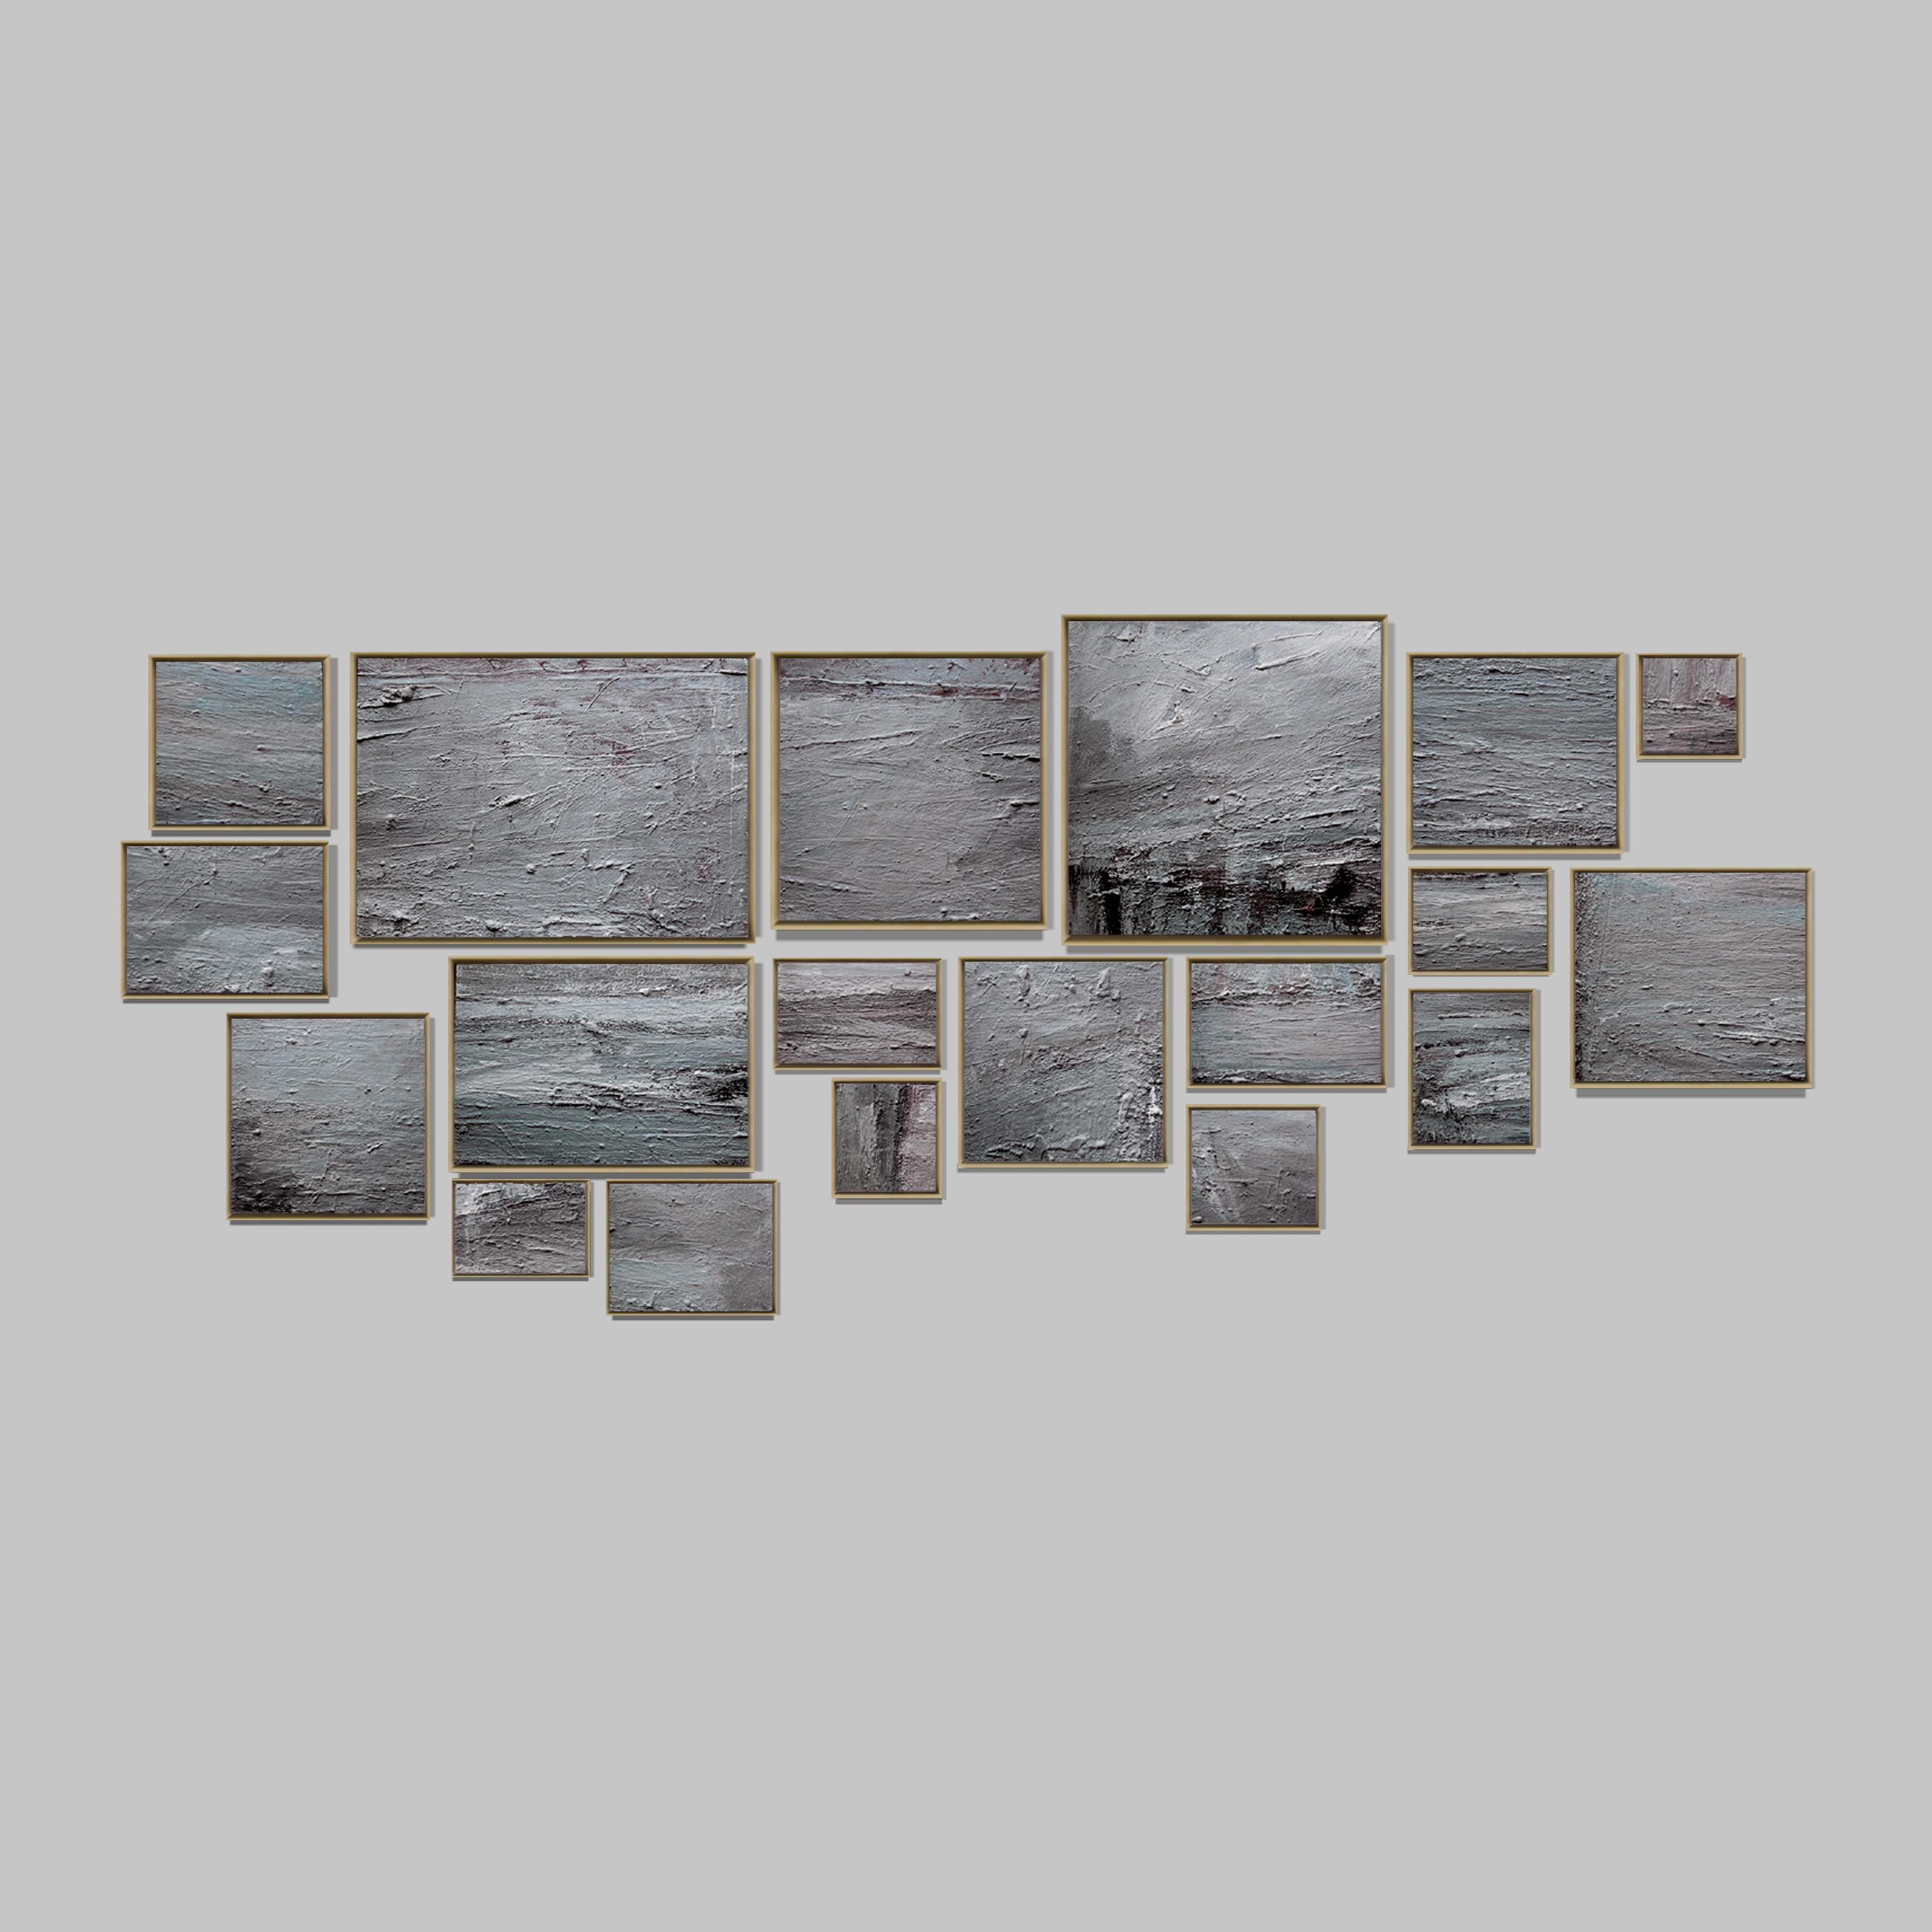 Fouad Bellamine
Déchire, 1993 - 2017
Pieces découpés (20)
15 x 20 cm